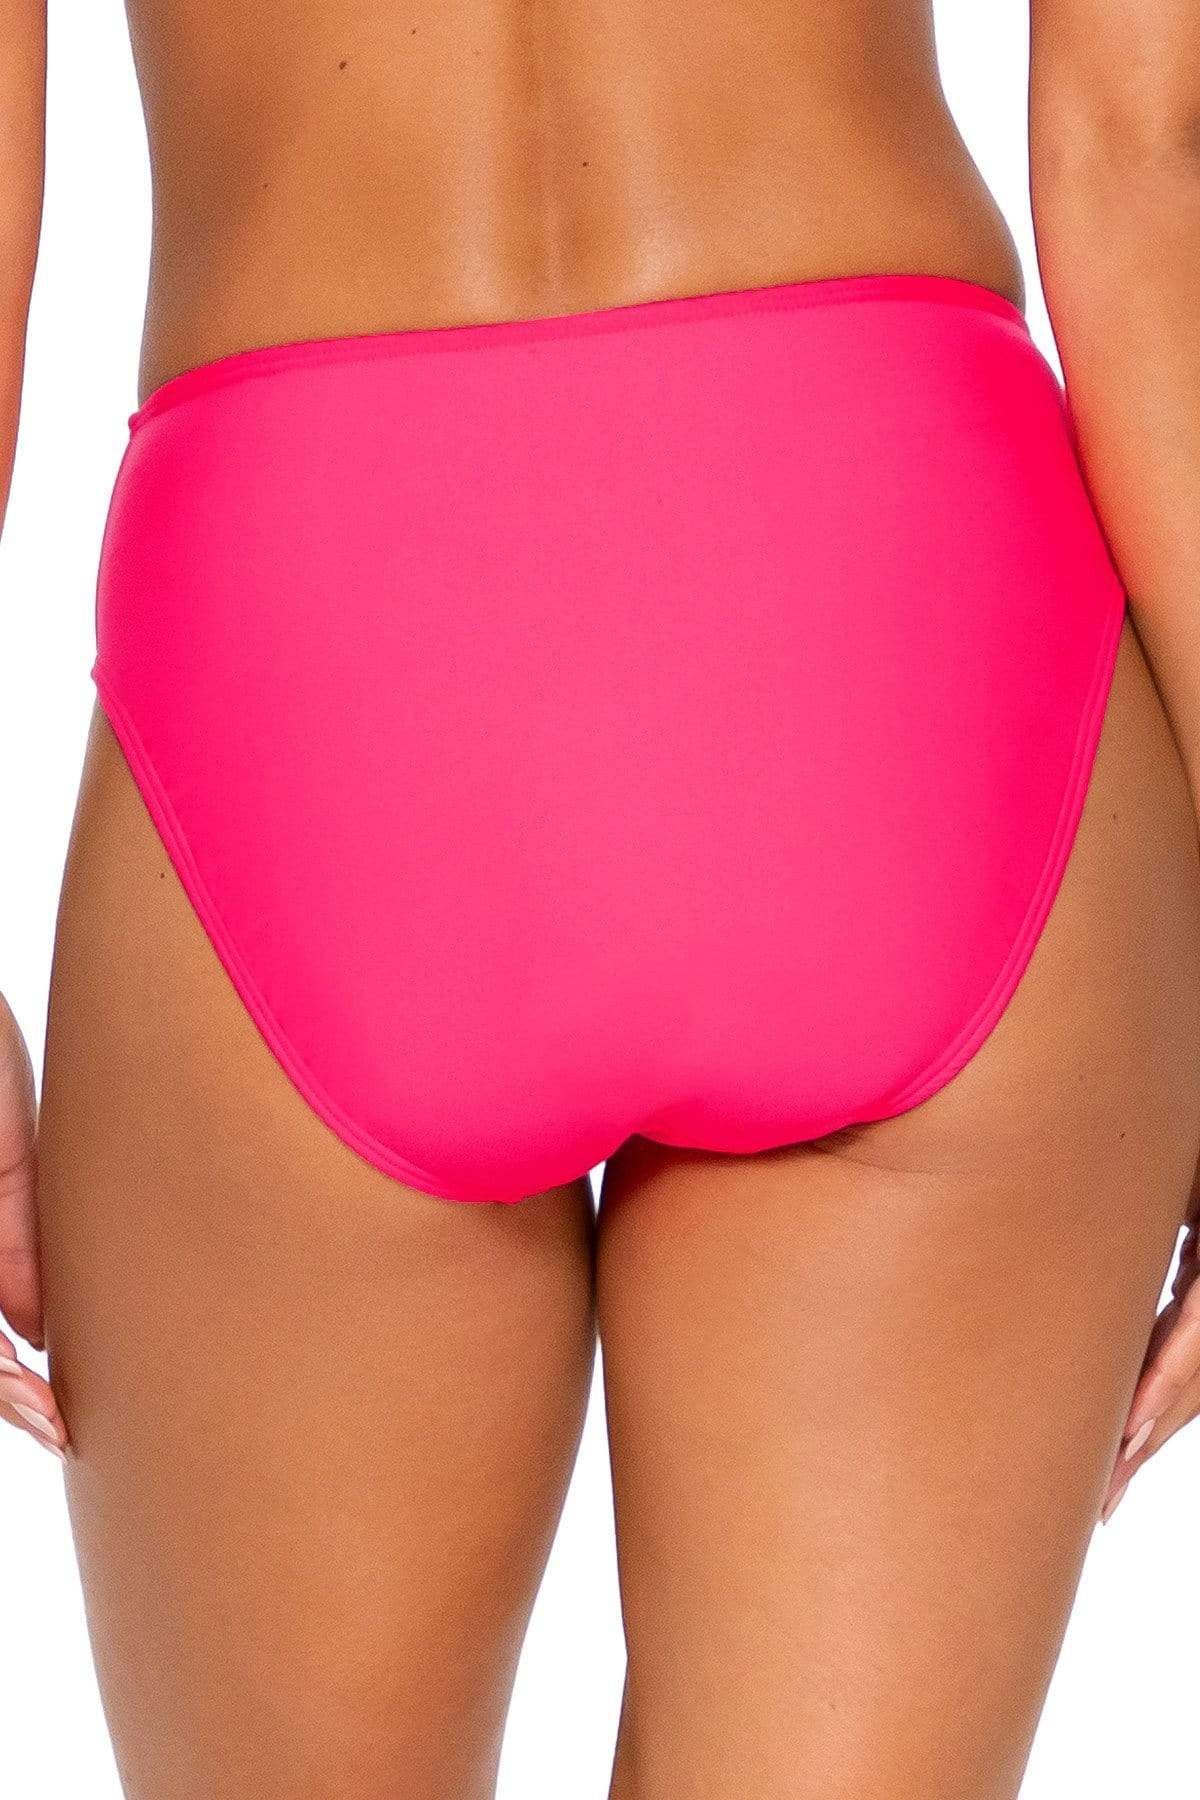 Bestswimwear -  Sunsets Hot Pink Basic Bottom